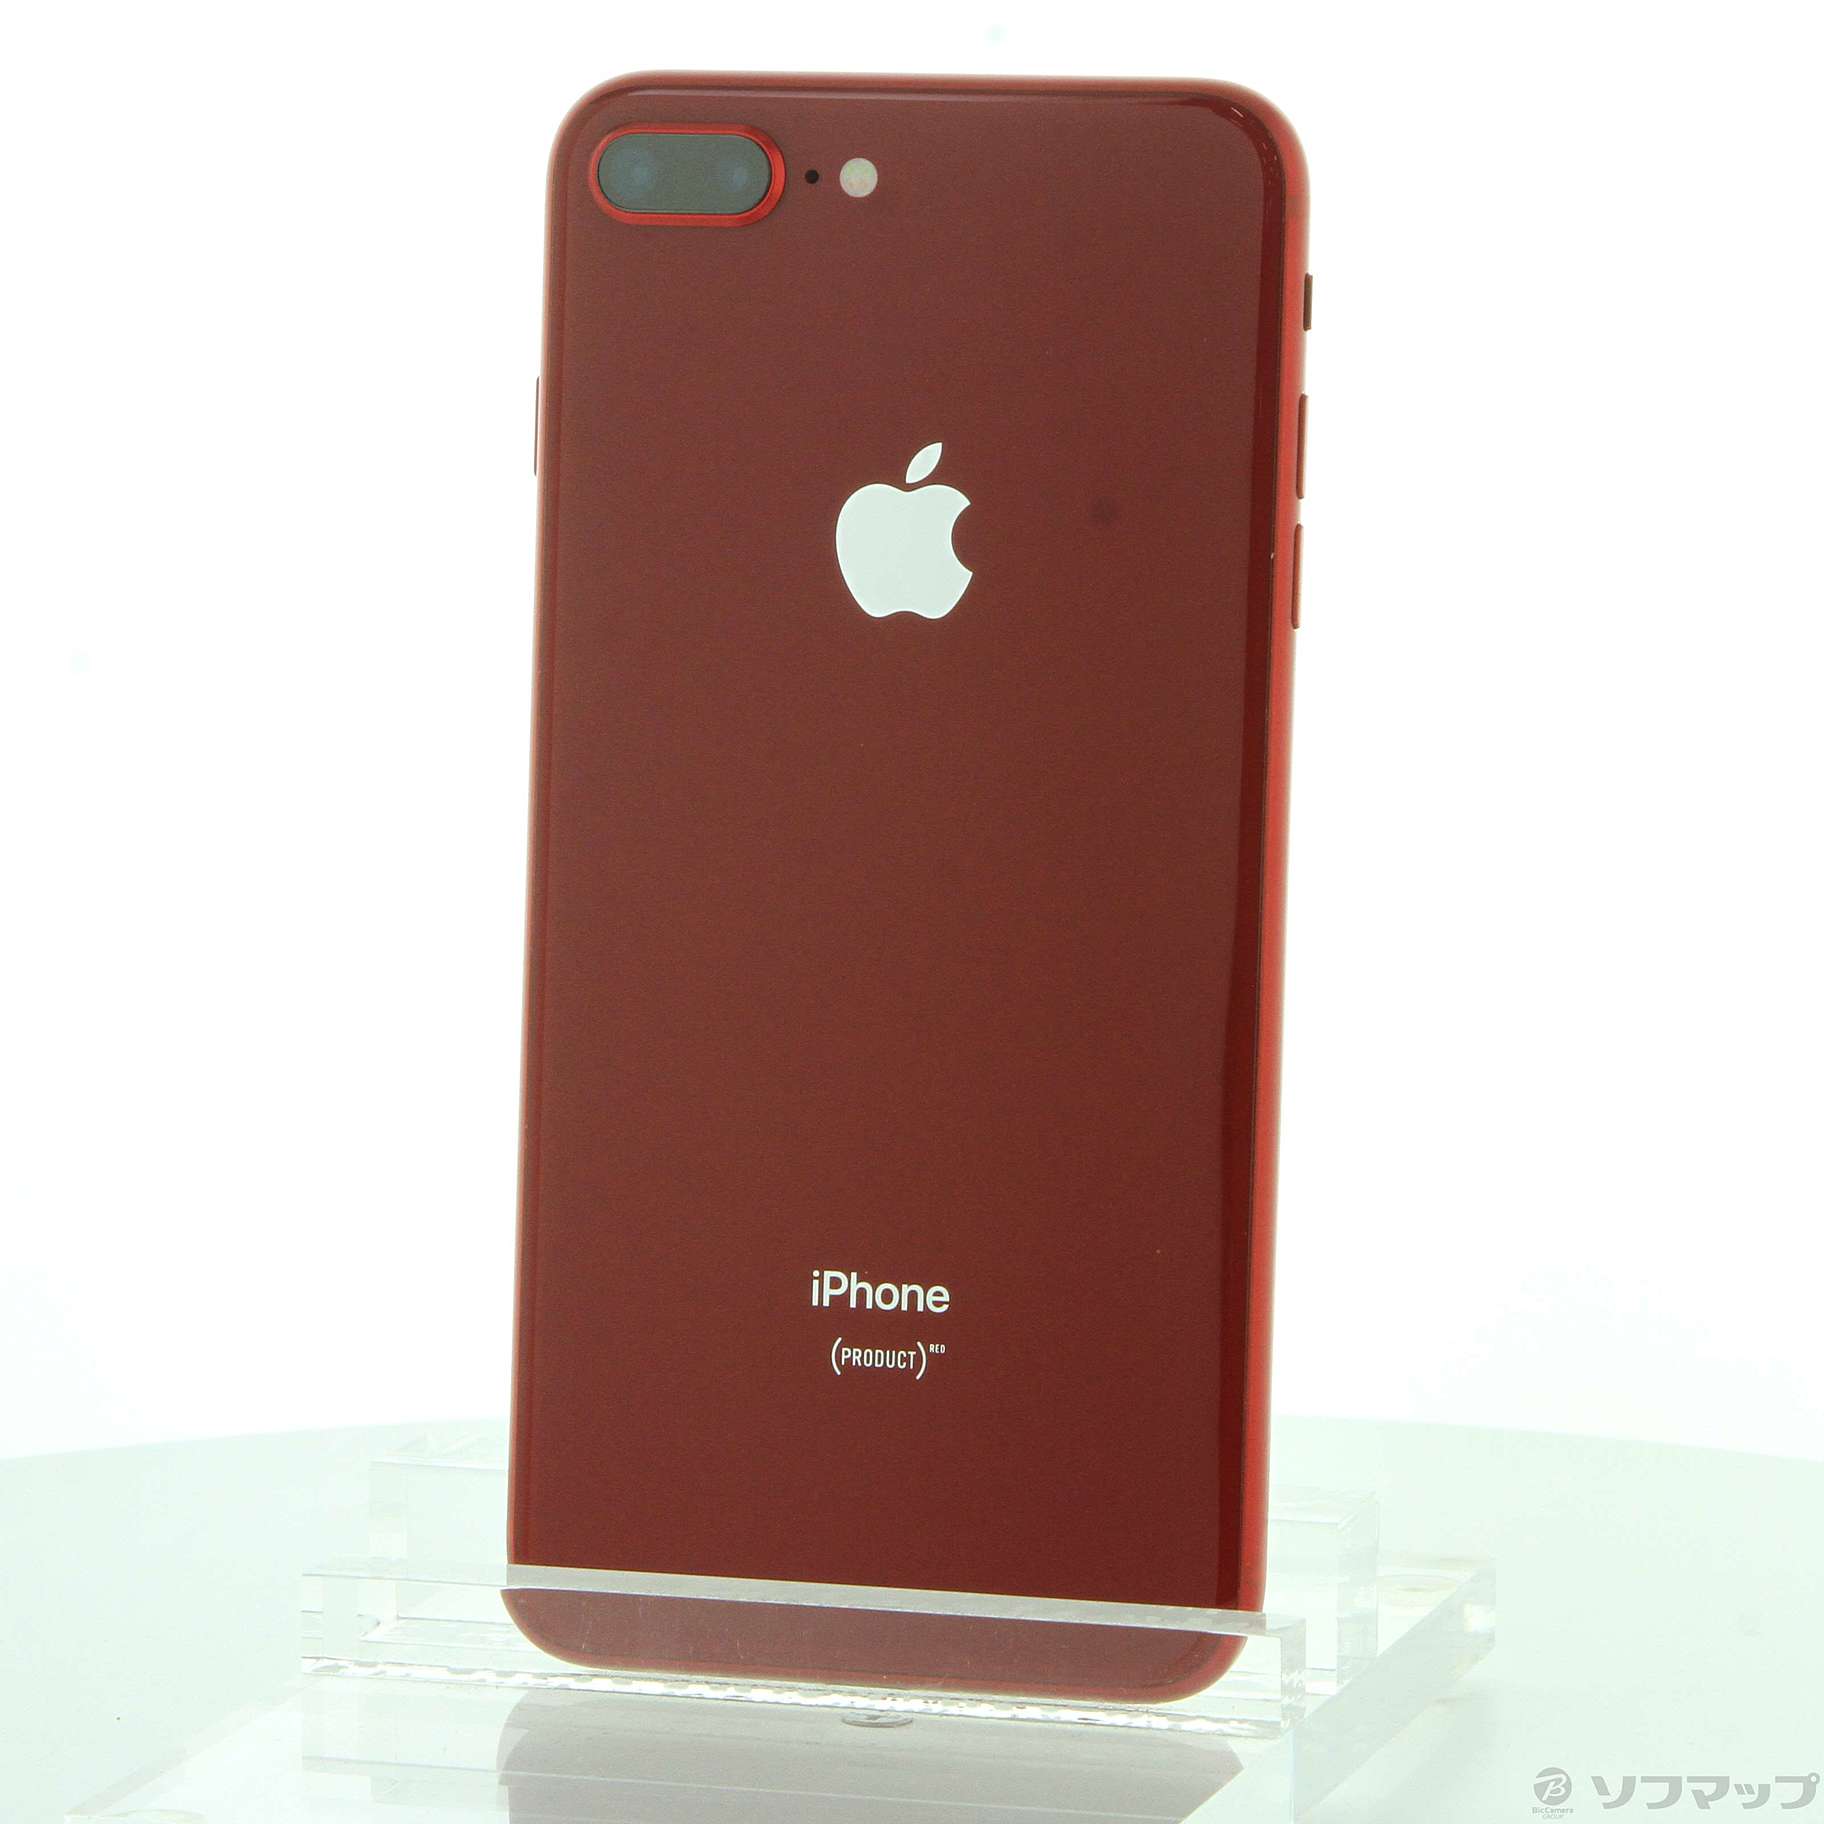 iphone 8PLUS プロダクトレッド　64GB SIMフリー「美品」動作確認